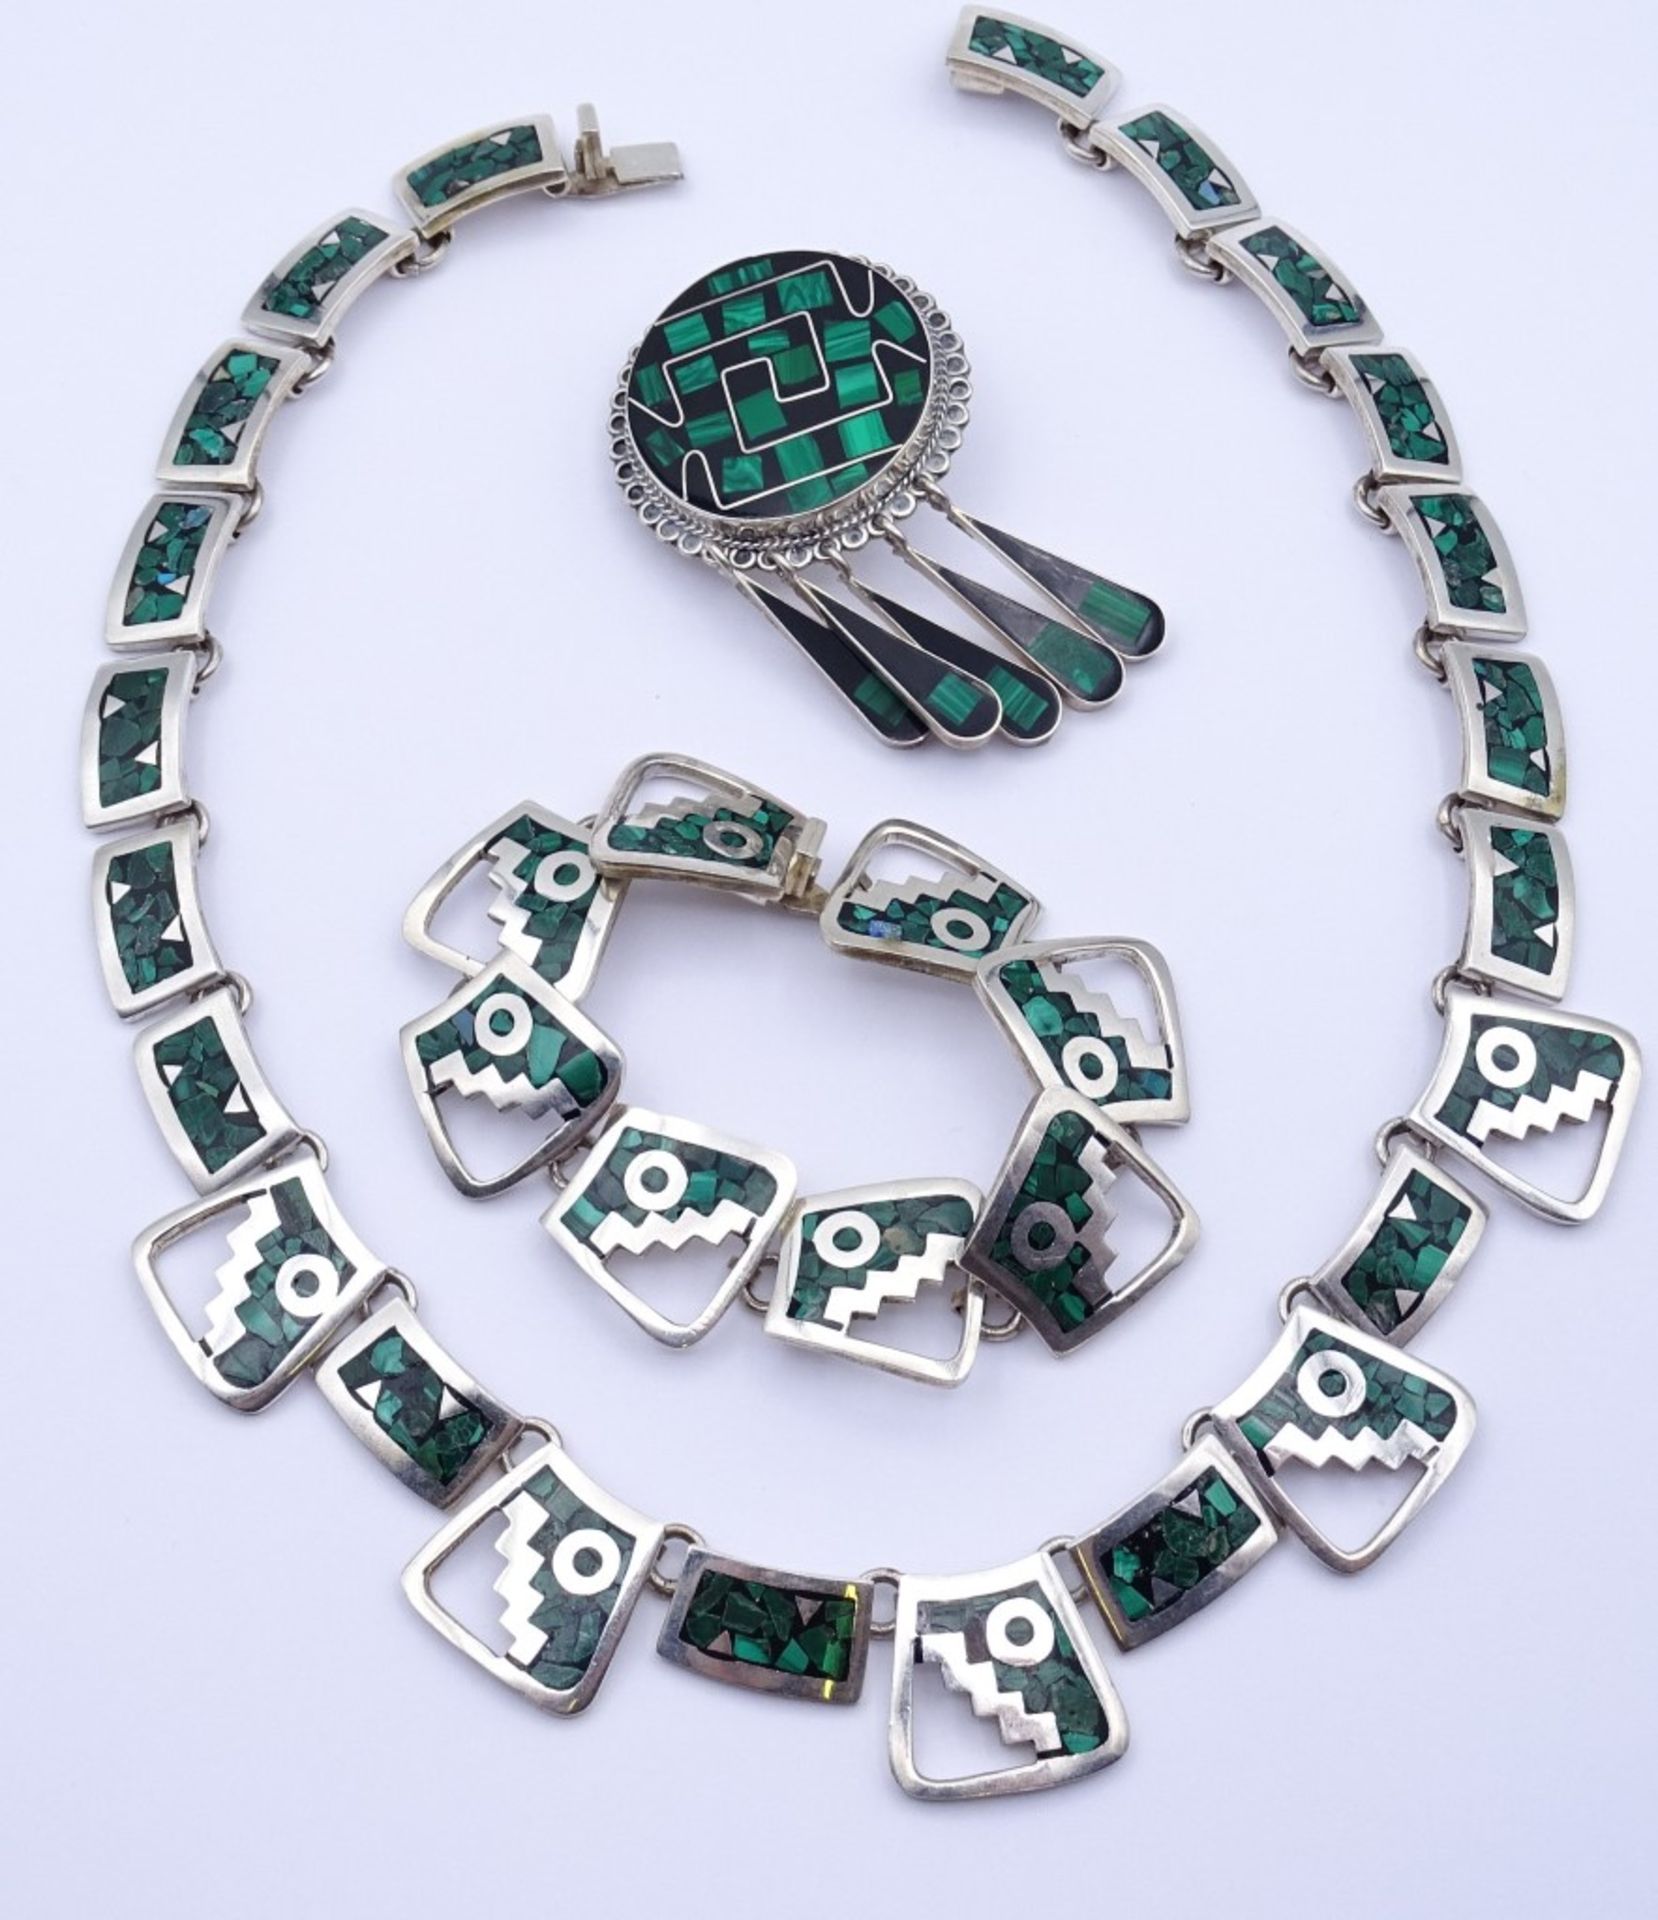 Sterling Silber Schmuck Set Mexico,Halskette,Armband und Brosche,mit Malachit / Onyx Besatz,ges.